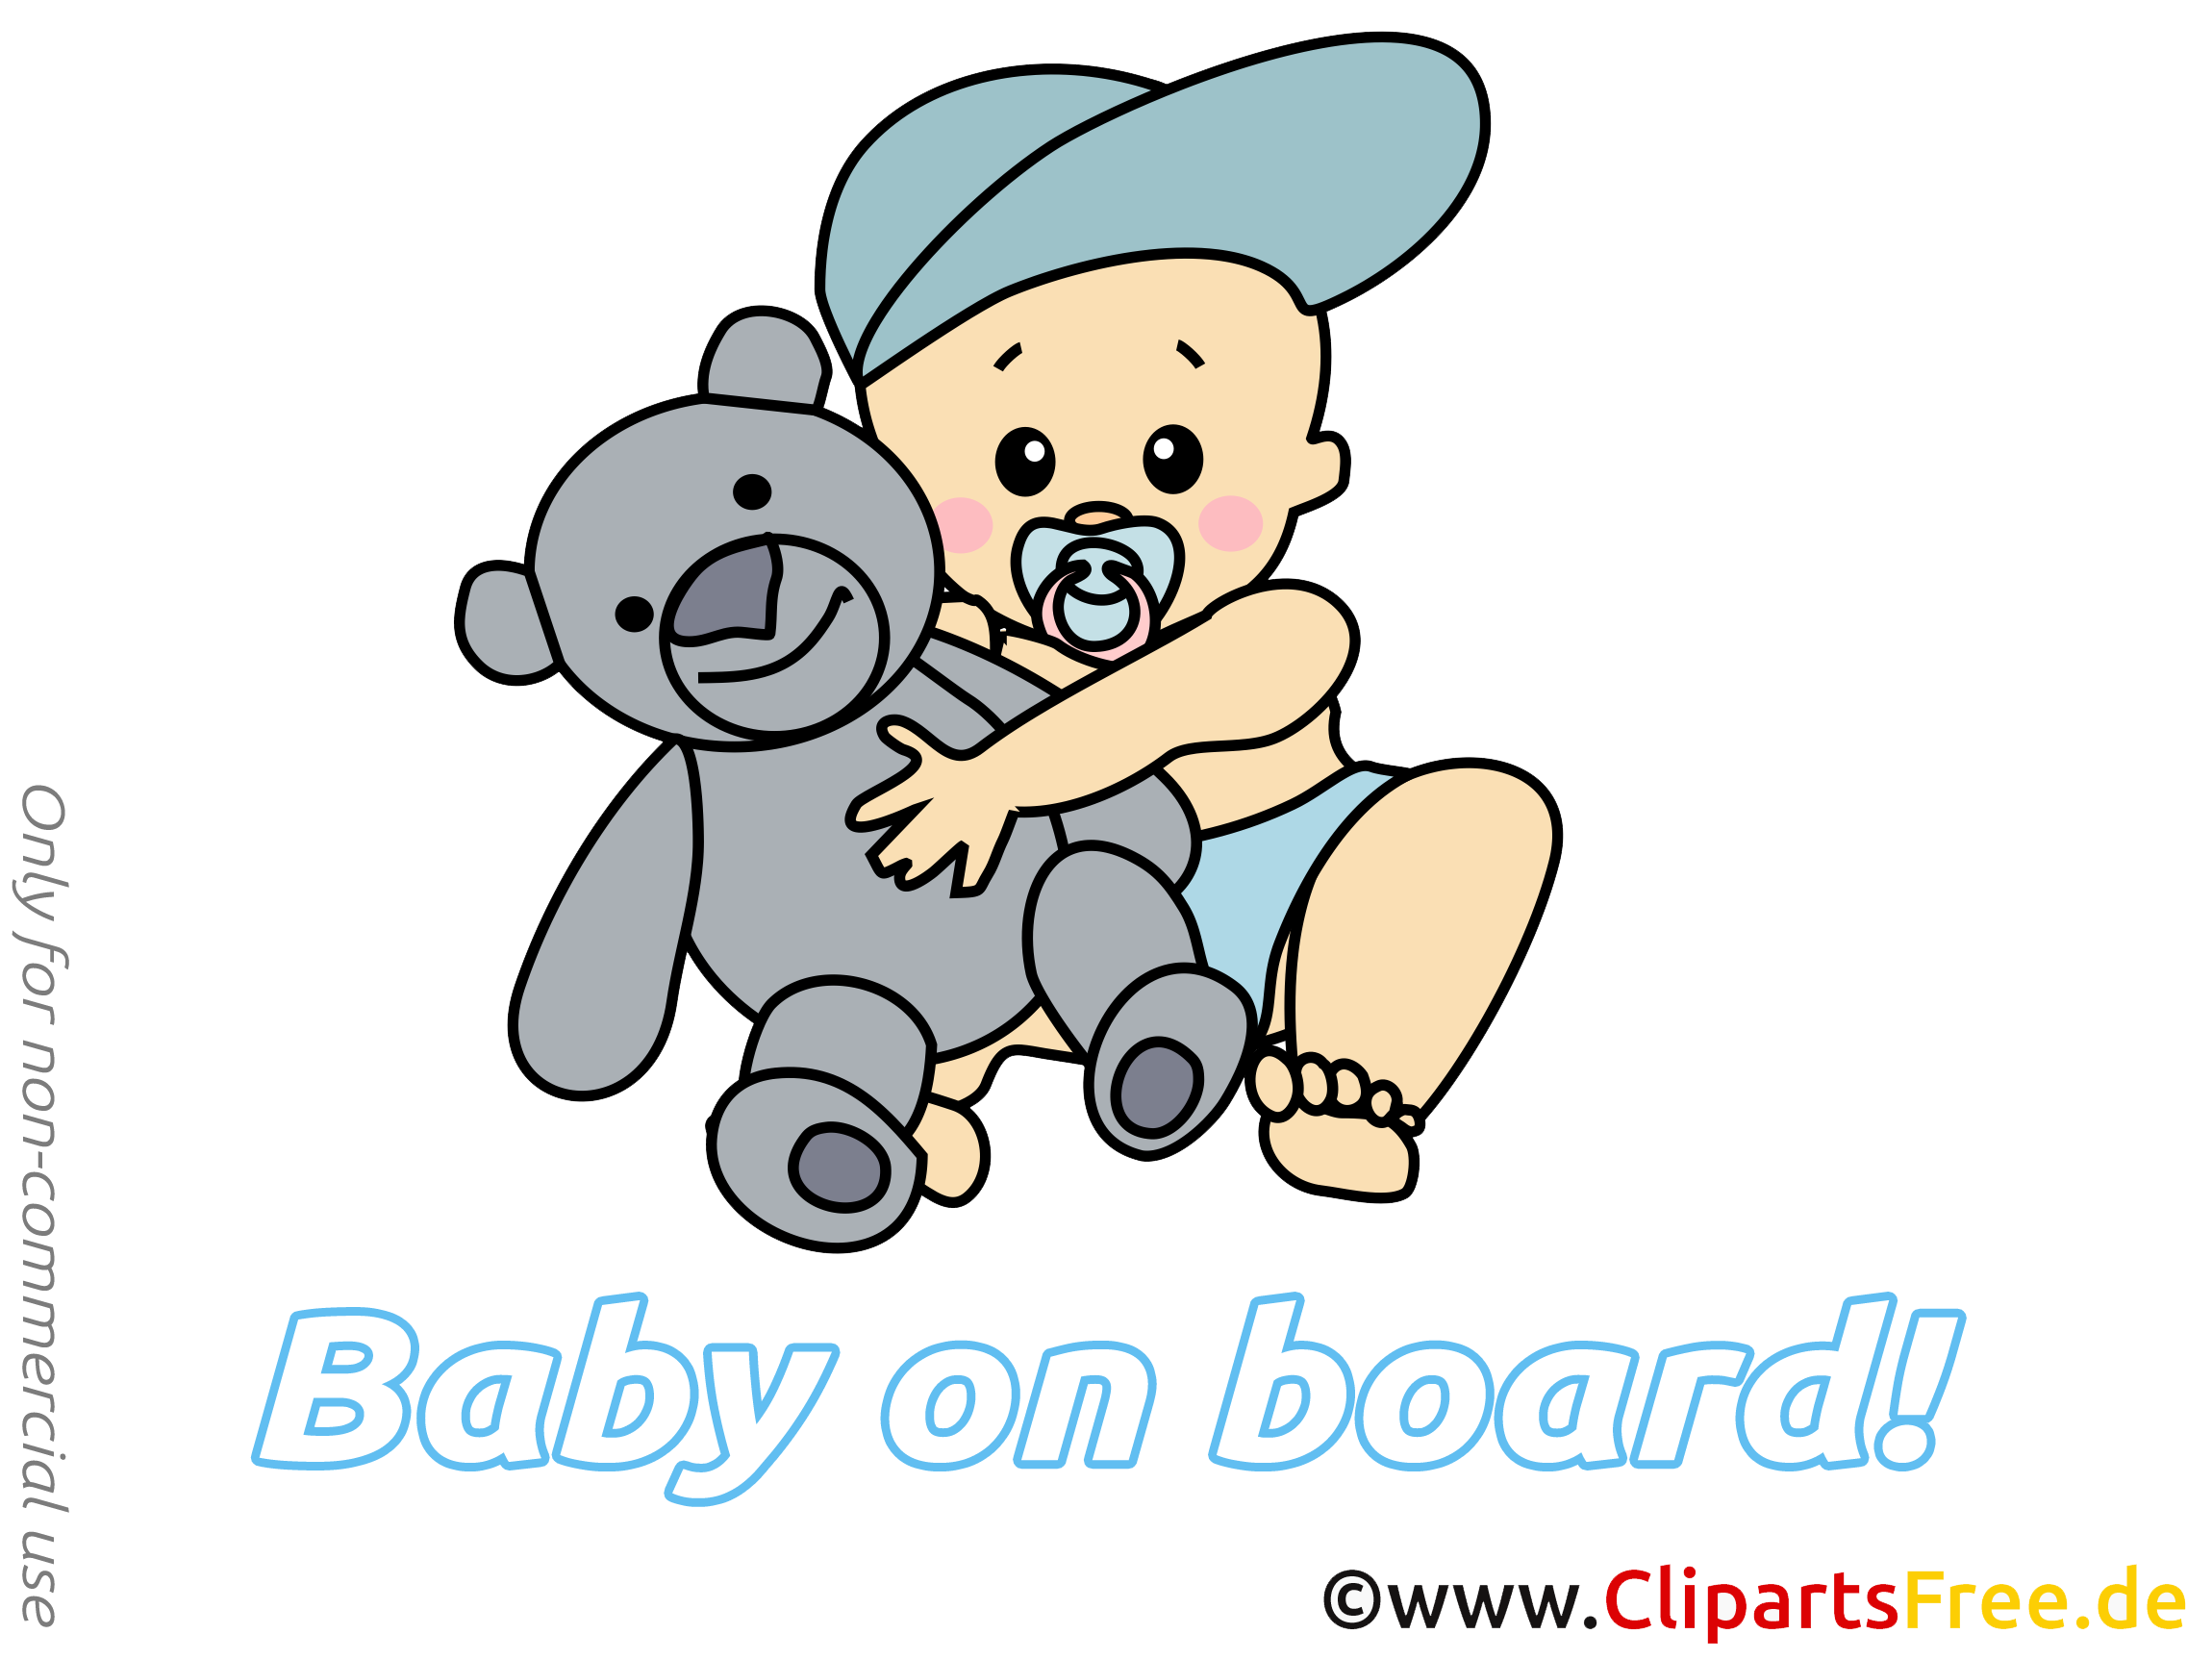 Ours en peluche cliparts gratuis – Bébé à bord images